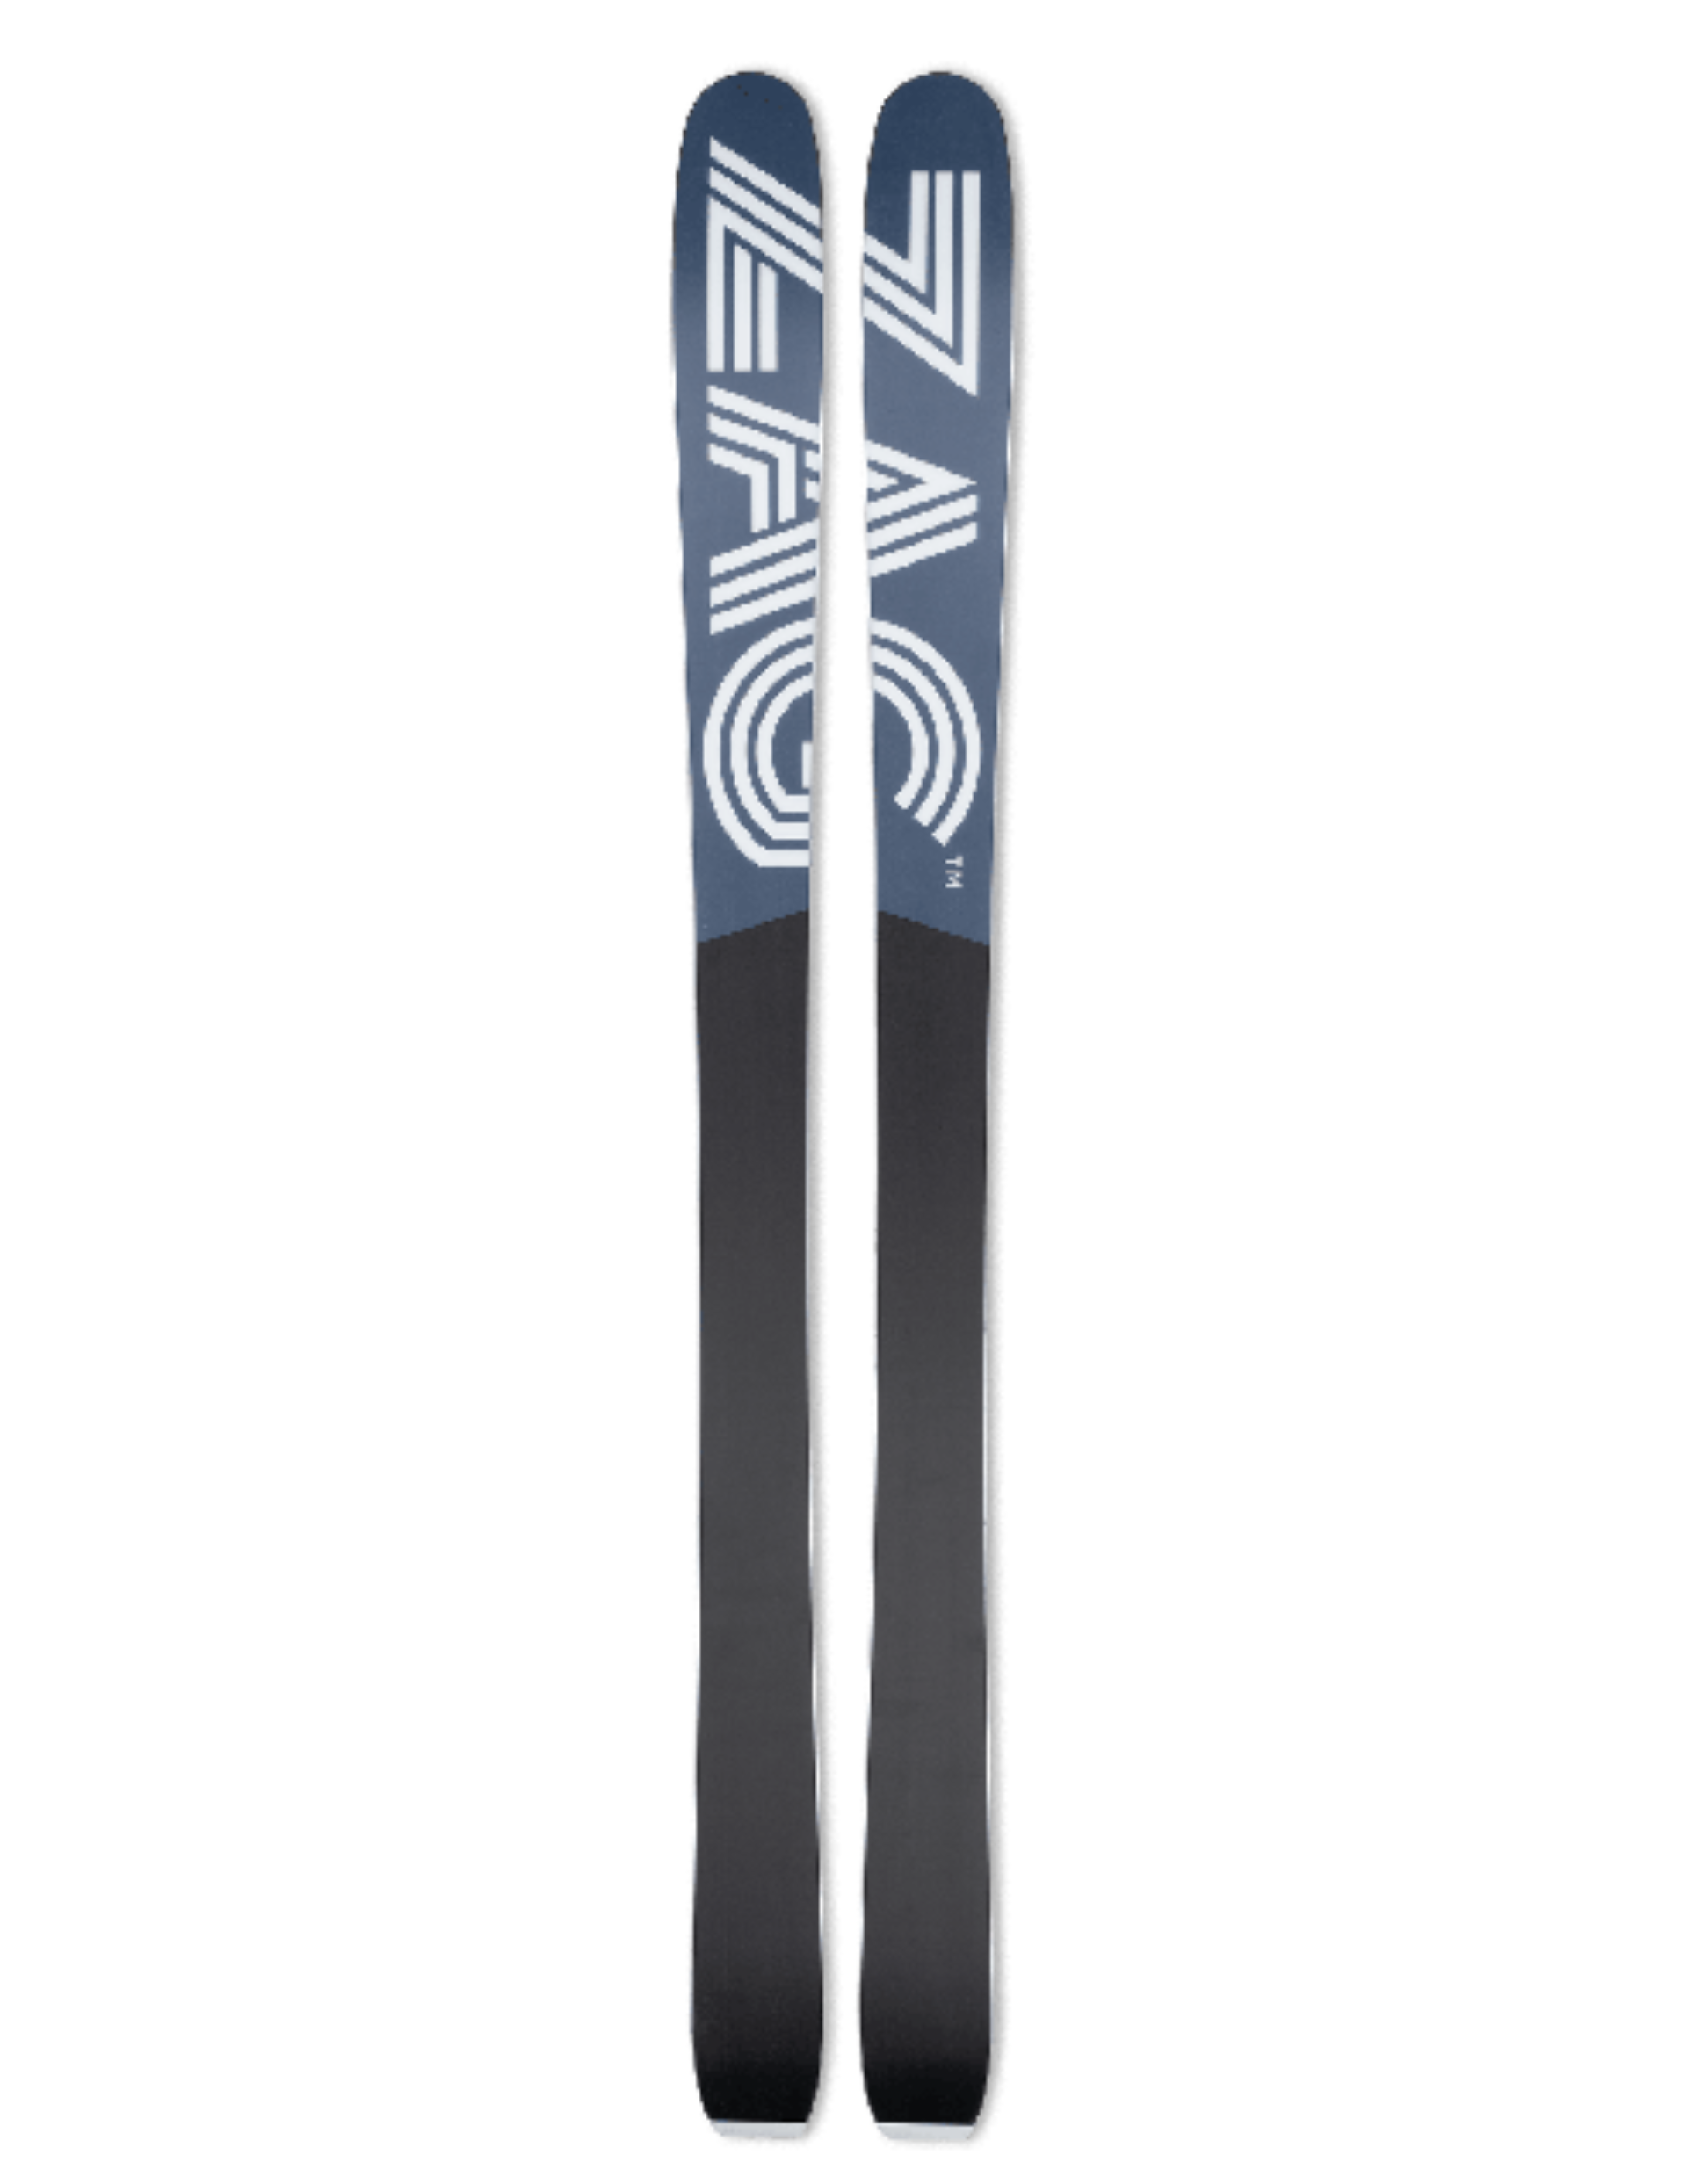 Skis de FreeRando ZAG Ubac 95 pour homme : semelle frittée pour une glisse optimale